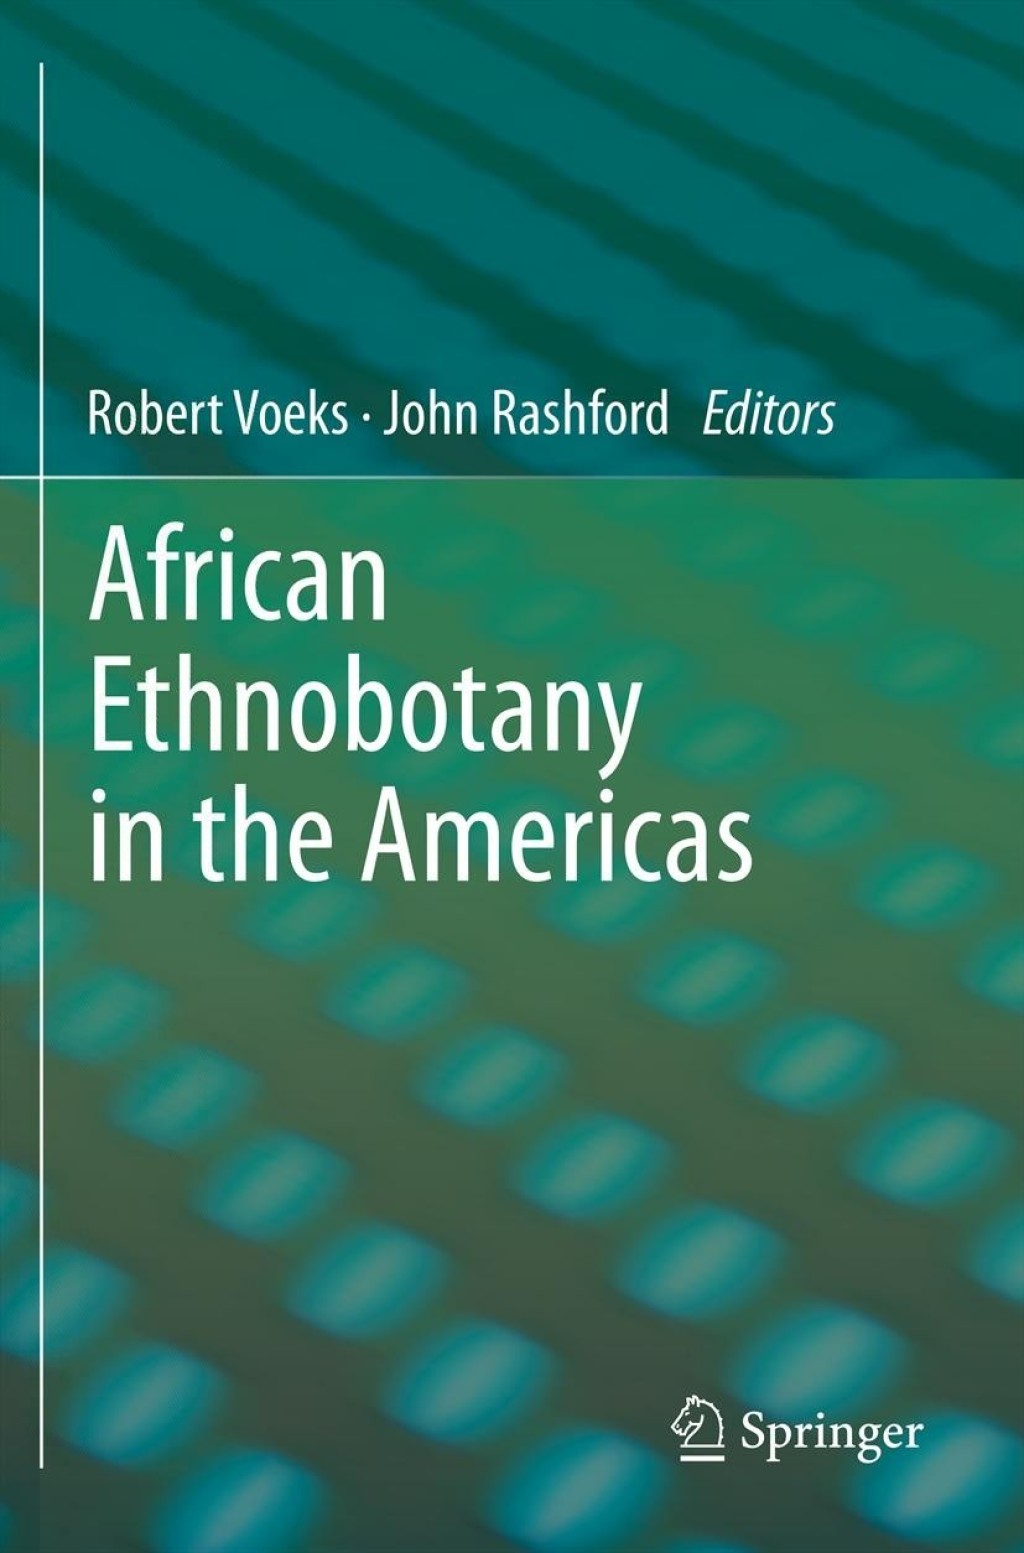 African Ethnobotany in the Americas (eBook Rental) - Robert Voeks,